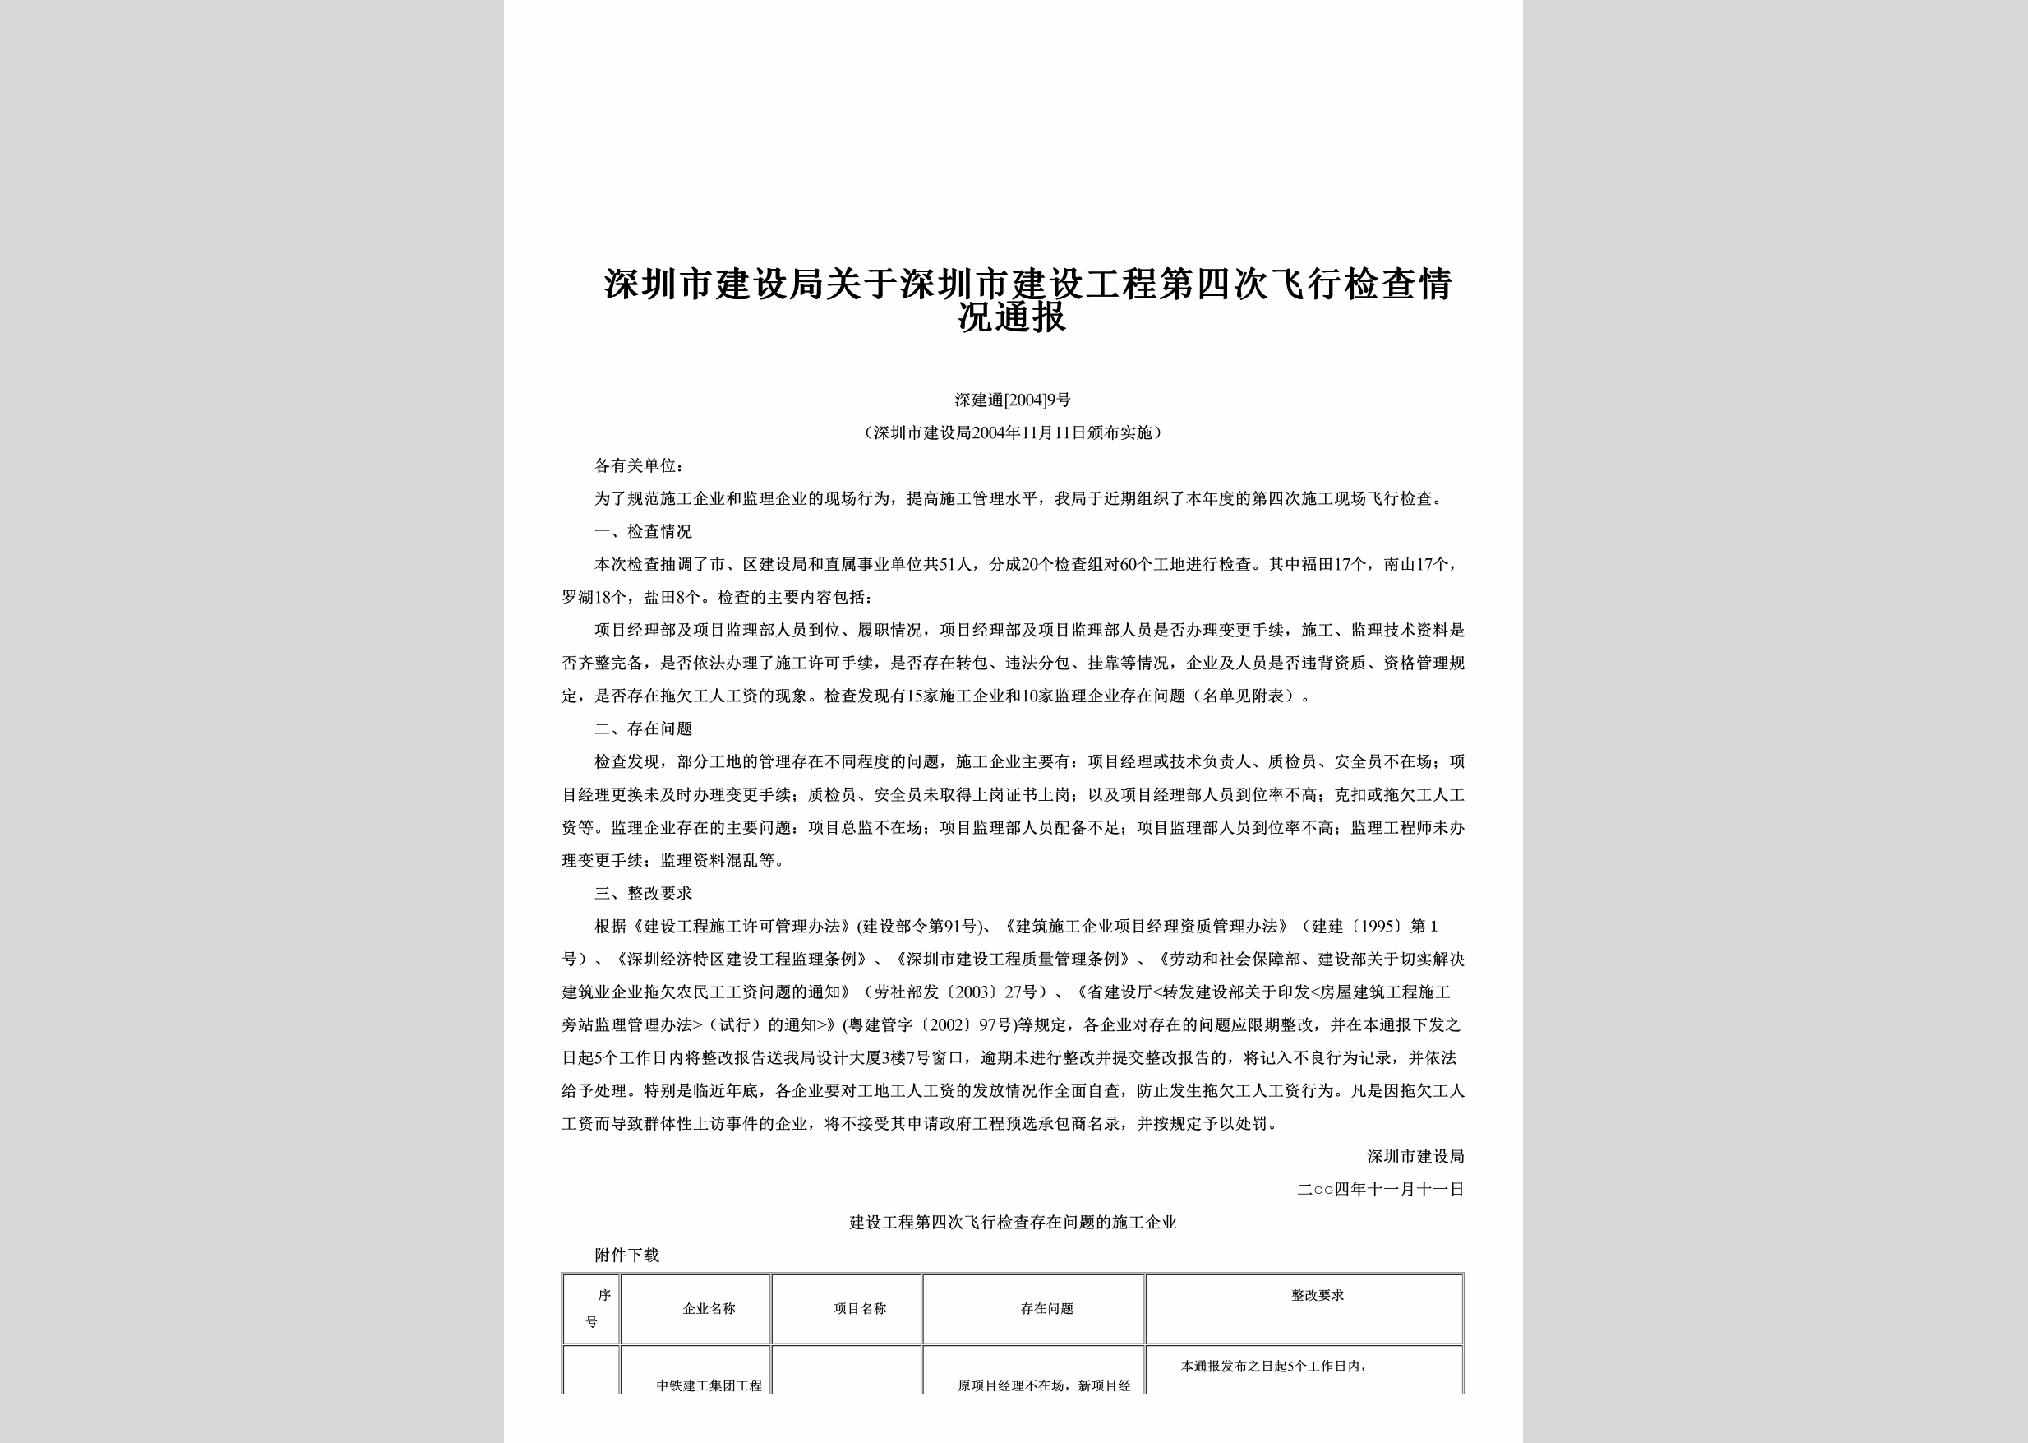 深建通[2004]9号：关于深圳市建设工程第四次飞行检查情况通报